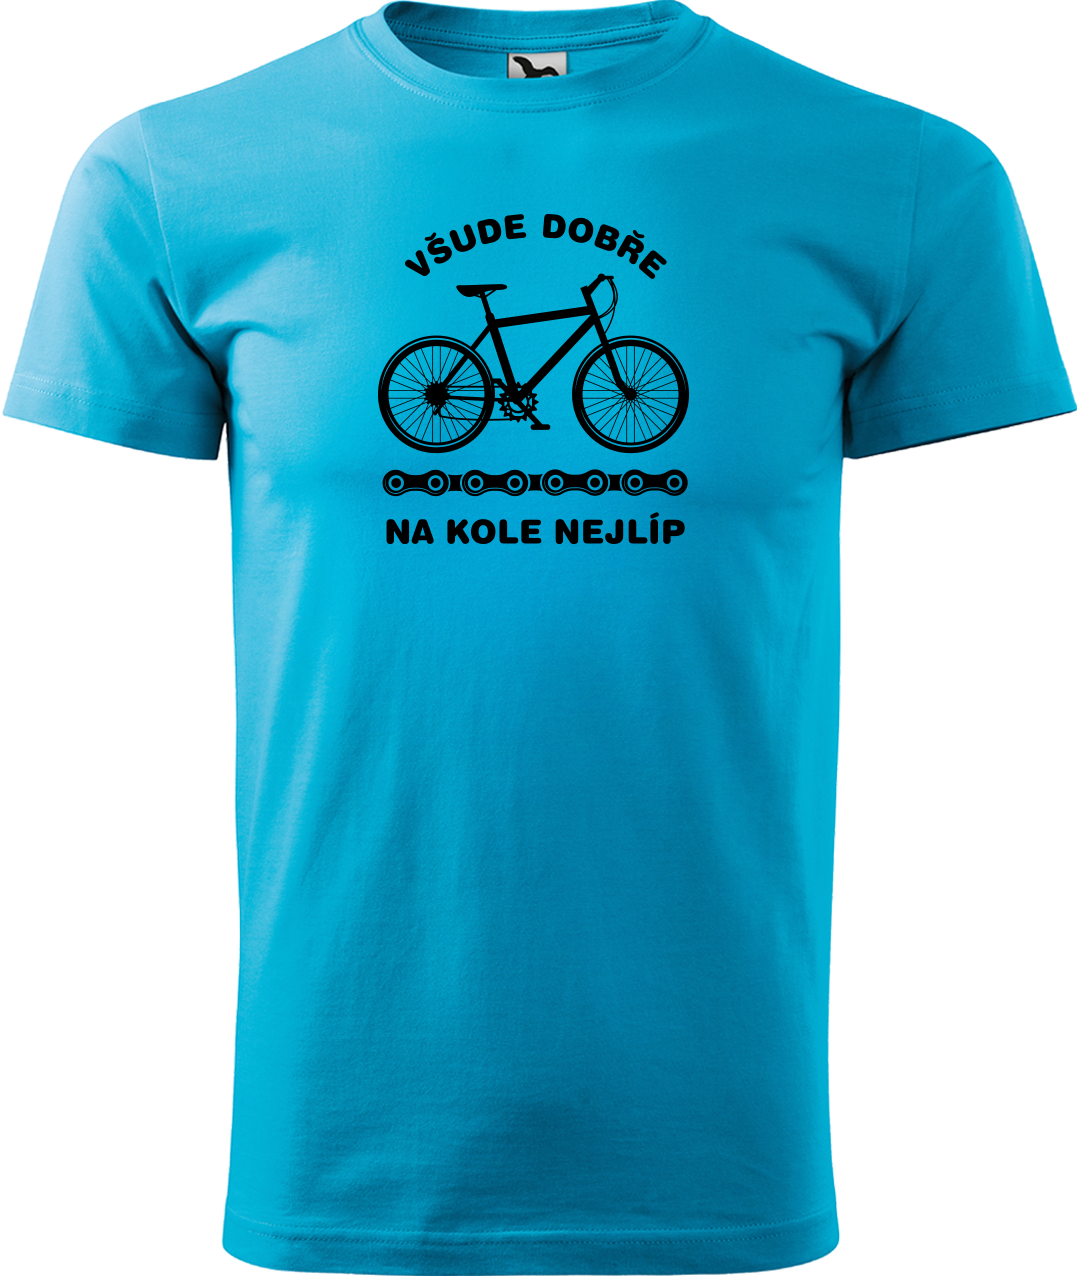 Pánské tričko s kolem - Všude dobře, na kole nejlíp Velikost: XL, Barva: Tyrkysová (44)